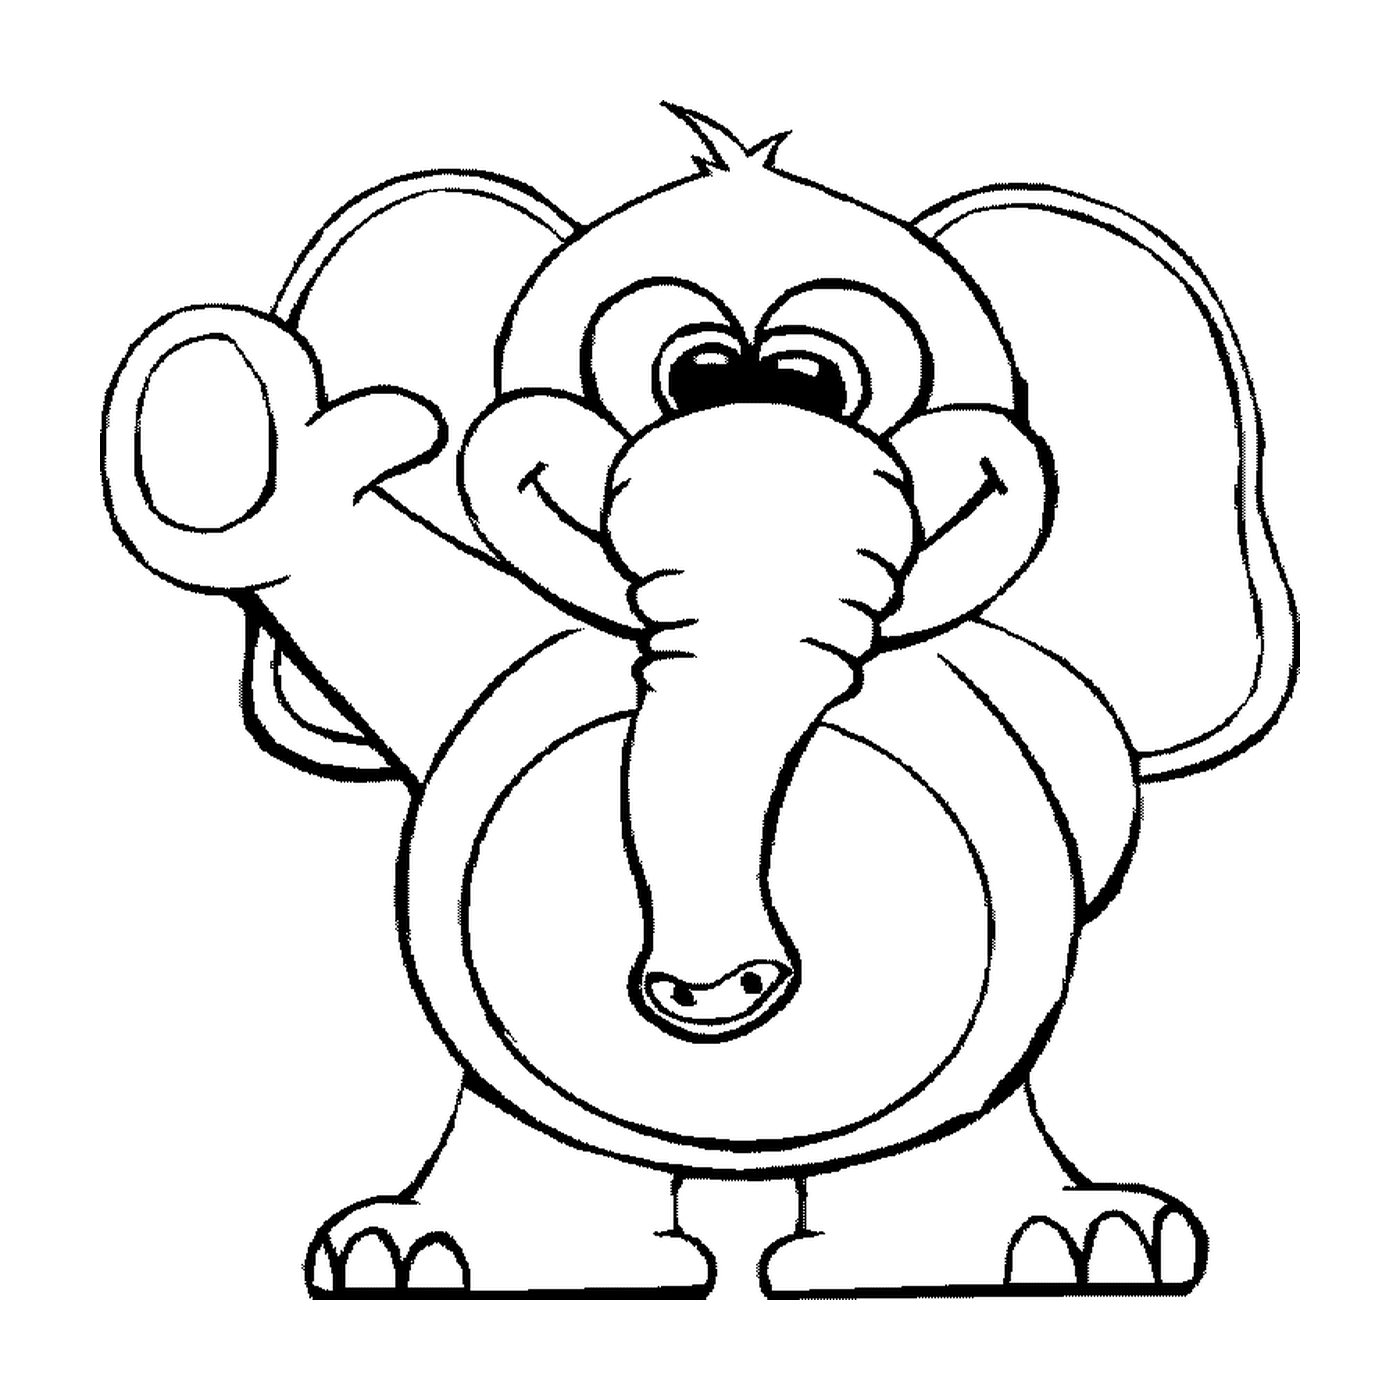  An elephant in a cartoon style 